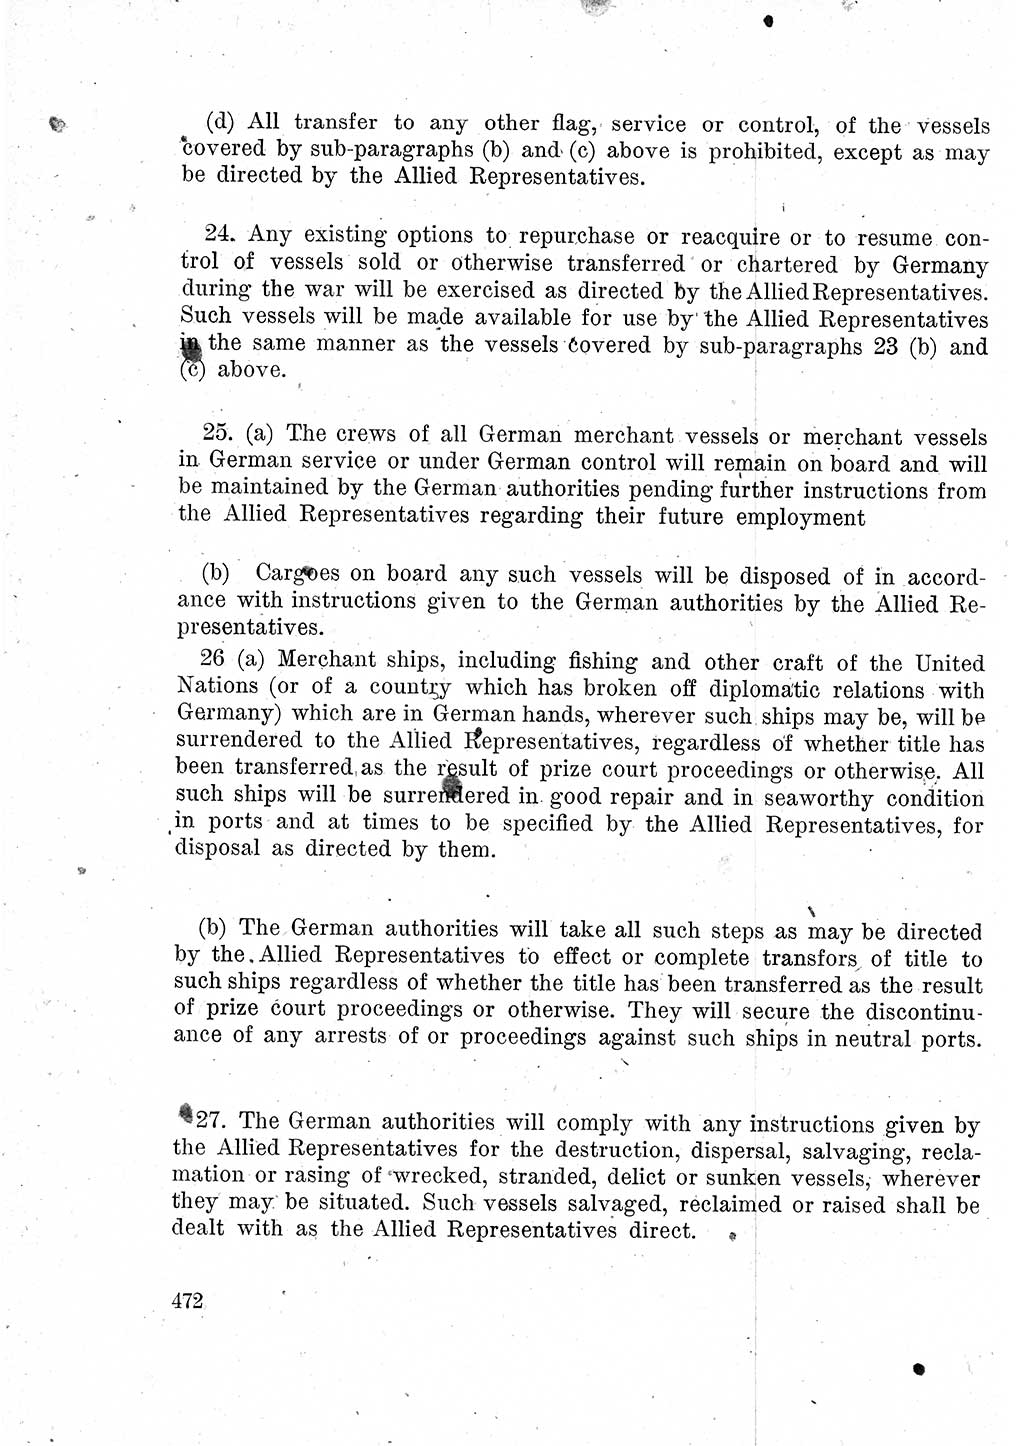 Das Recht der Besatzungsmacht (Deutschland), Proklamationen, Deklerationen, Verordnungen, Gesetze und Bekanntmachungen 1947, Seite 472 (R. Bes. Dtl. 1947, S. 472)